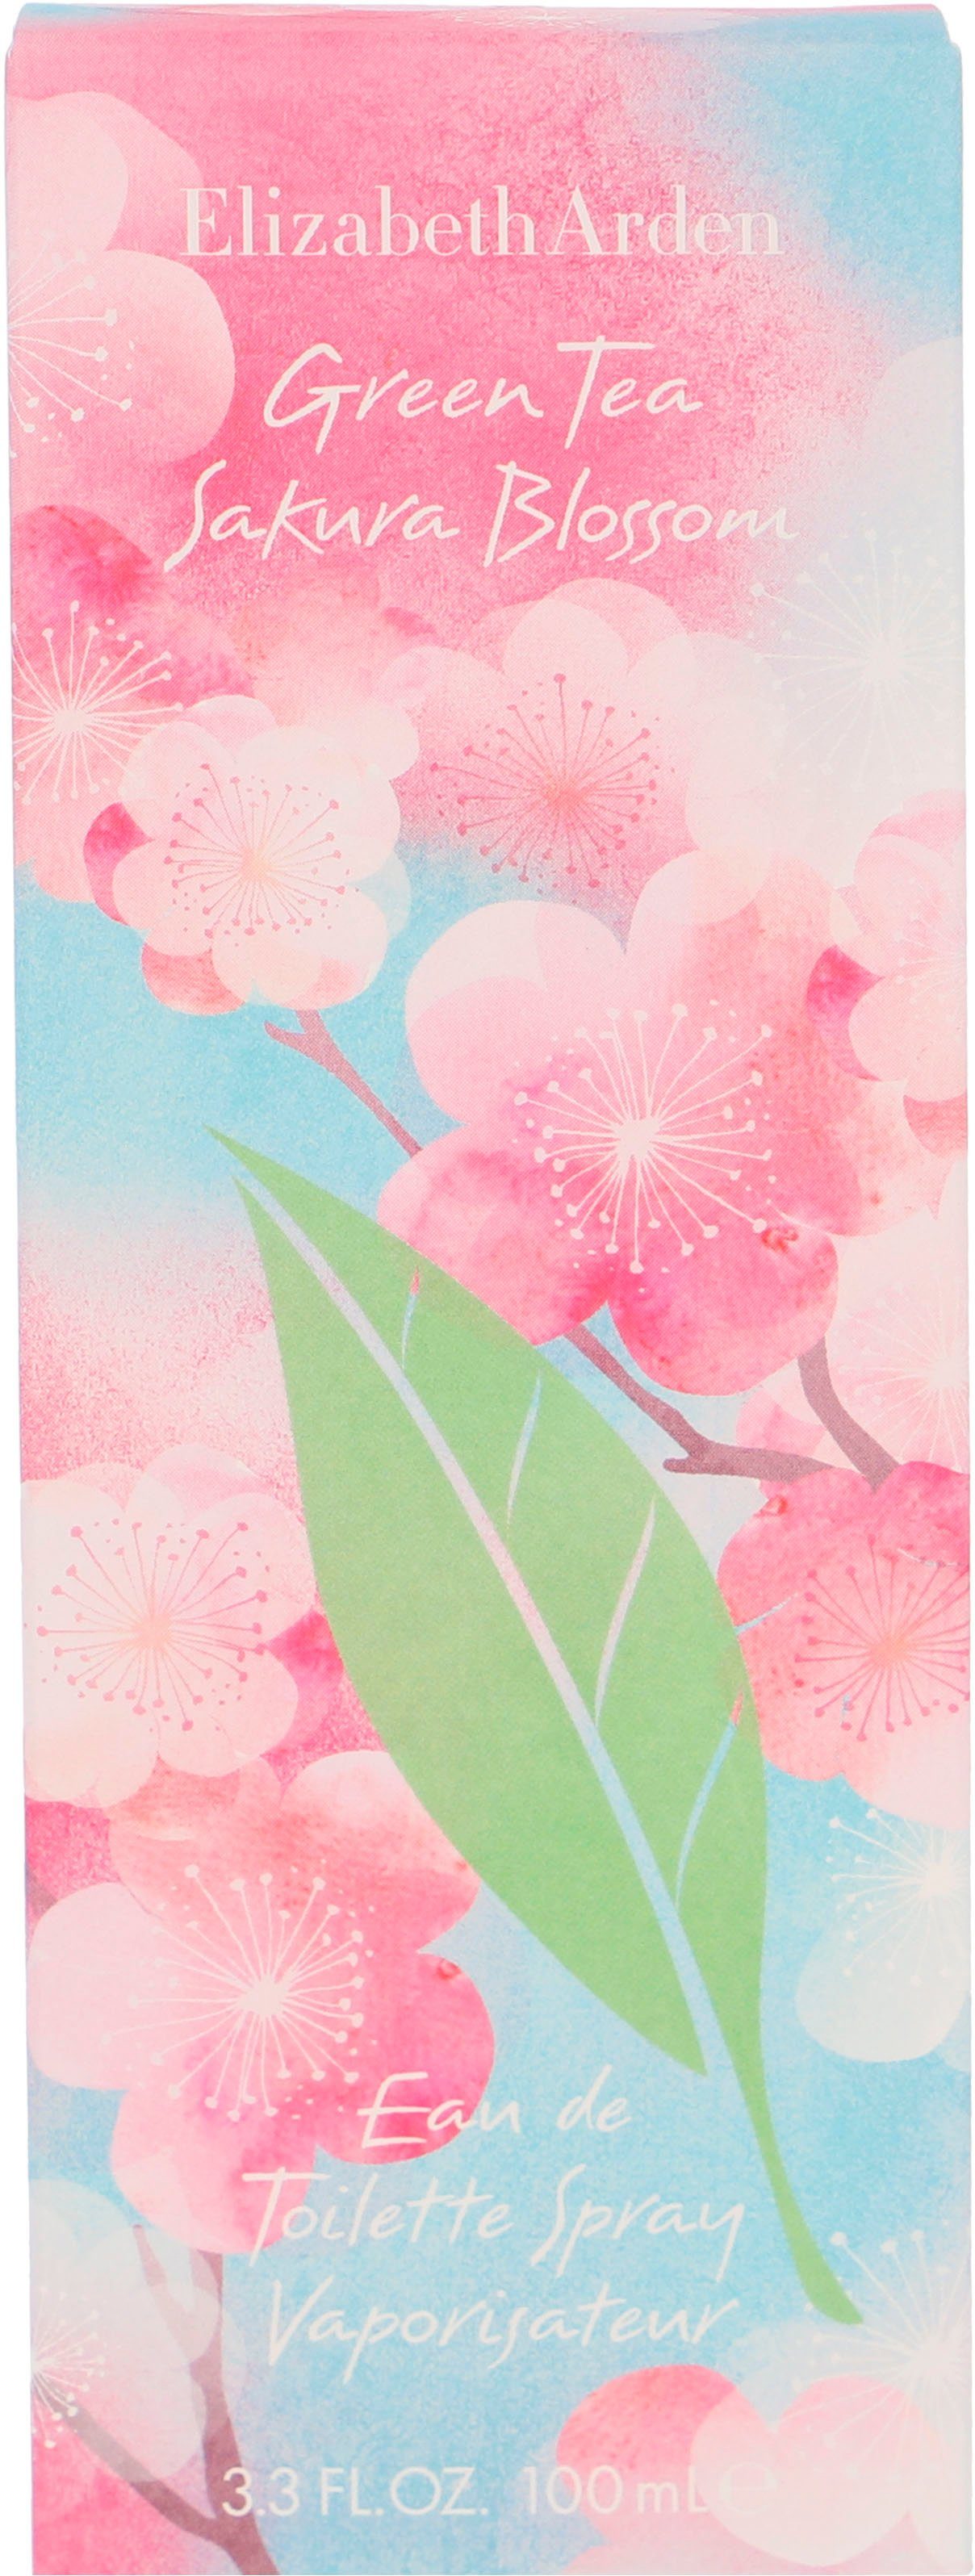 Sakura Arden Blossem Tea Green Toilette de Elizabeth Eau